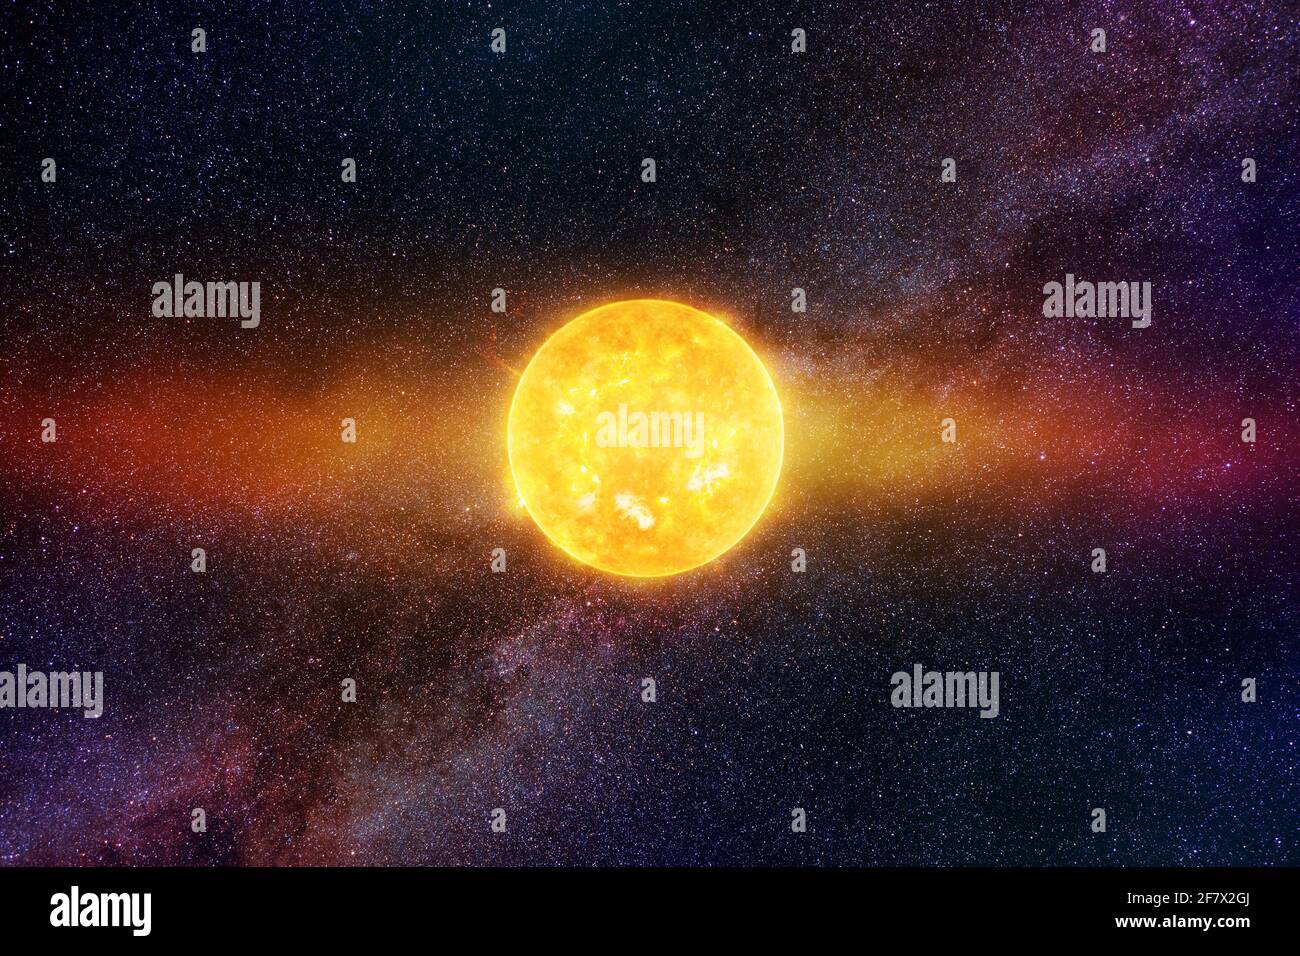 Soleil brillant contre ciel étoilé foncé et voie lactée dans le système solaire, éléments de cette image fournis par la NASA Banque D'Images